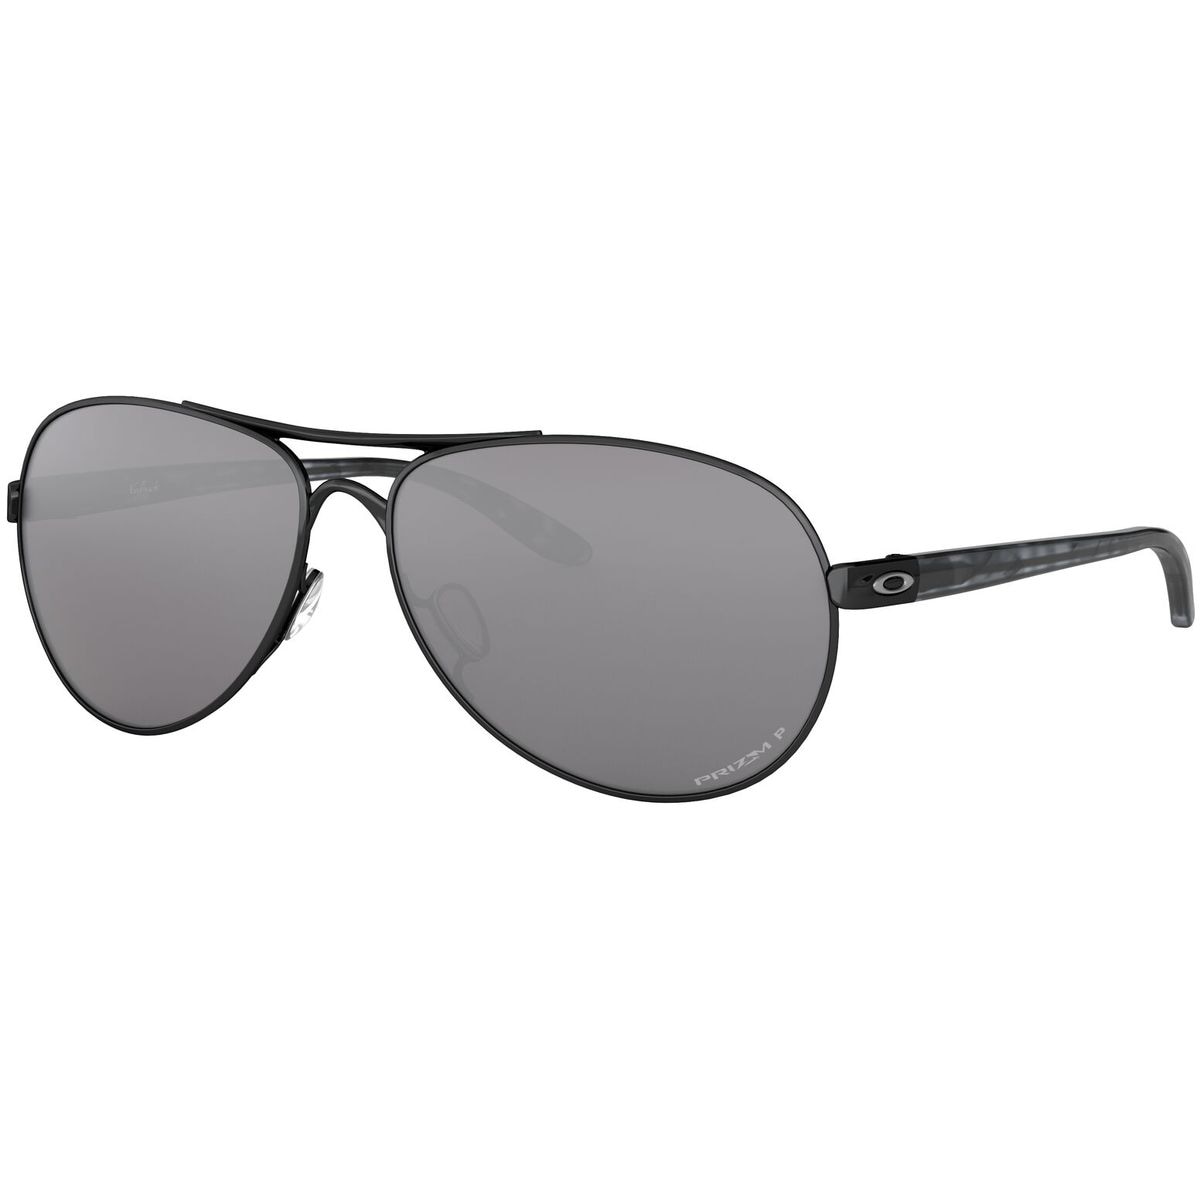 Oakley Feedback Polarized Sunglasses - Women's